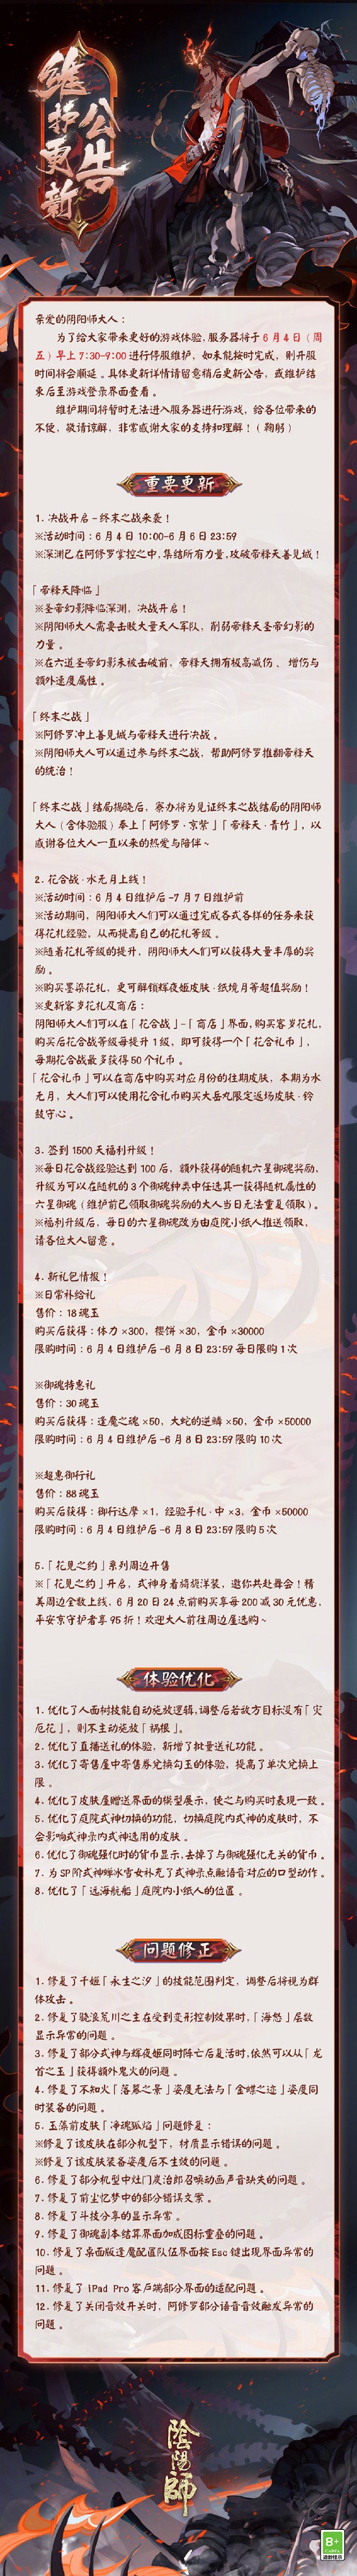 阴阳师6月4日更新公告 终末之战决战开启